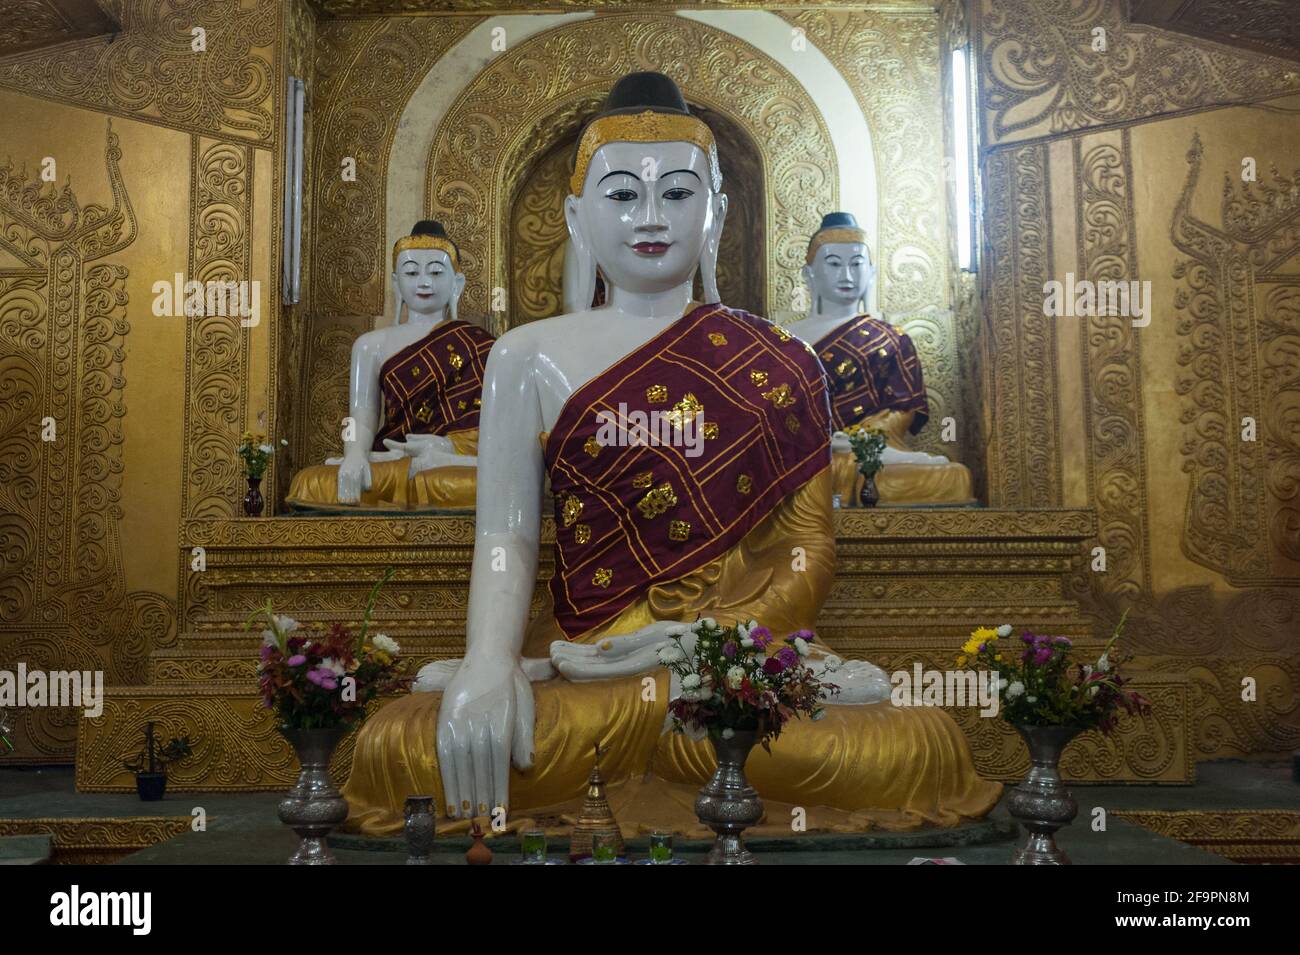 30.01.2017, Mawlamyine, Mon State, Myanmar - EINE Gruppe von Buddha-Figuren in der Kyaikthanlan-Pagode, der höchsten buddhistischen Pagode der Stadt. 0SL170130D060C Stockfoto